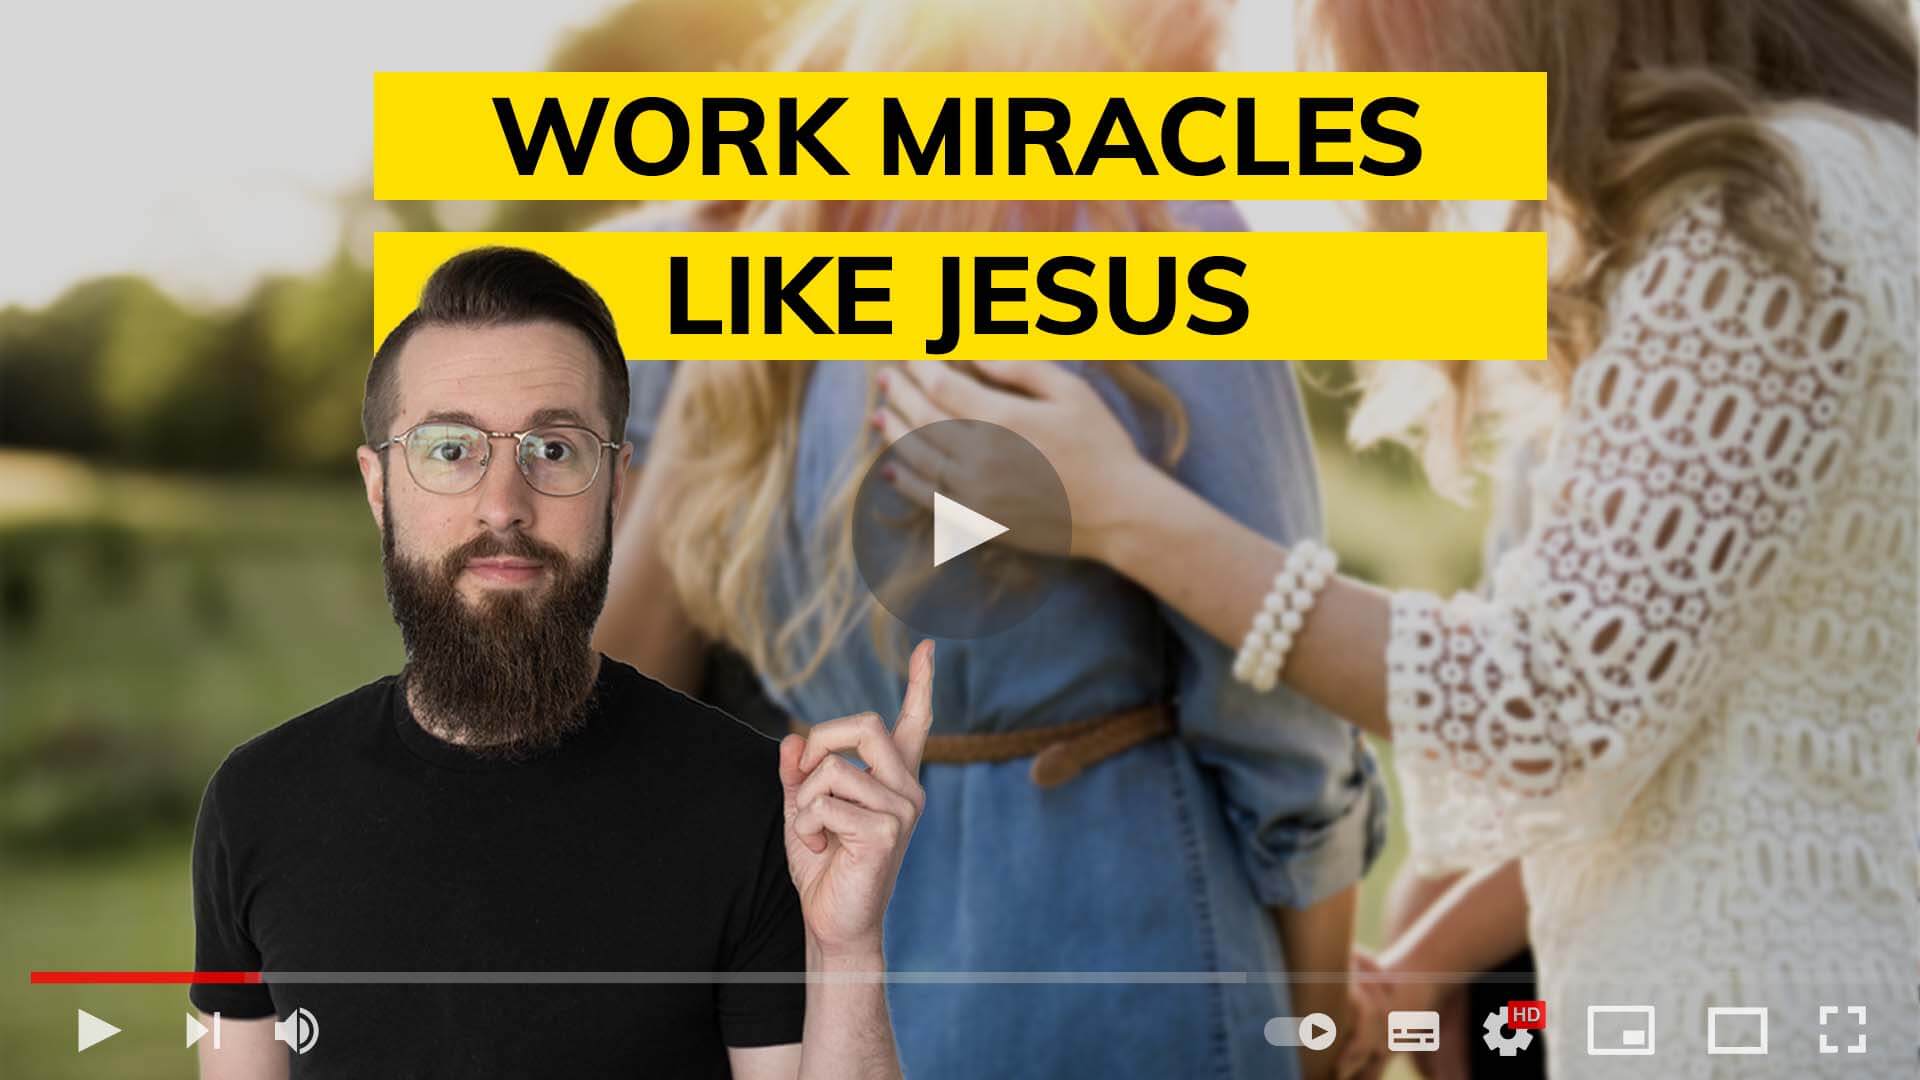 Work miracles like Jesus